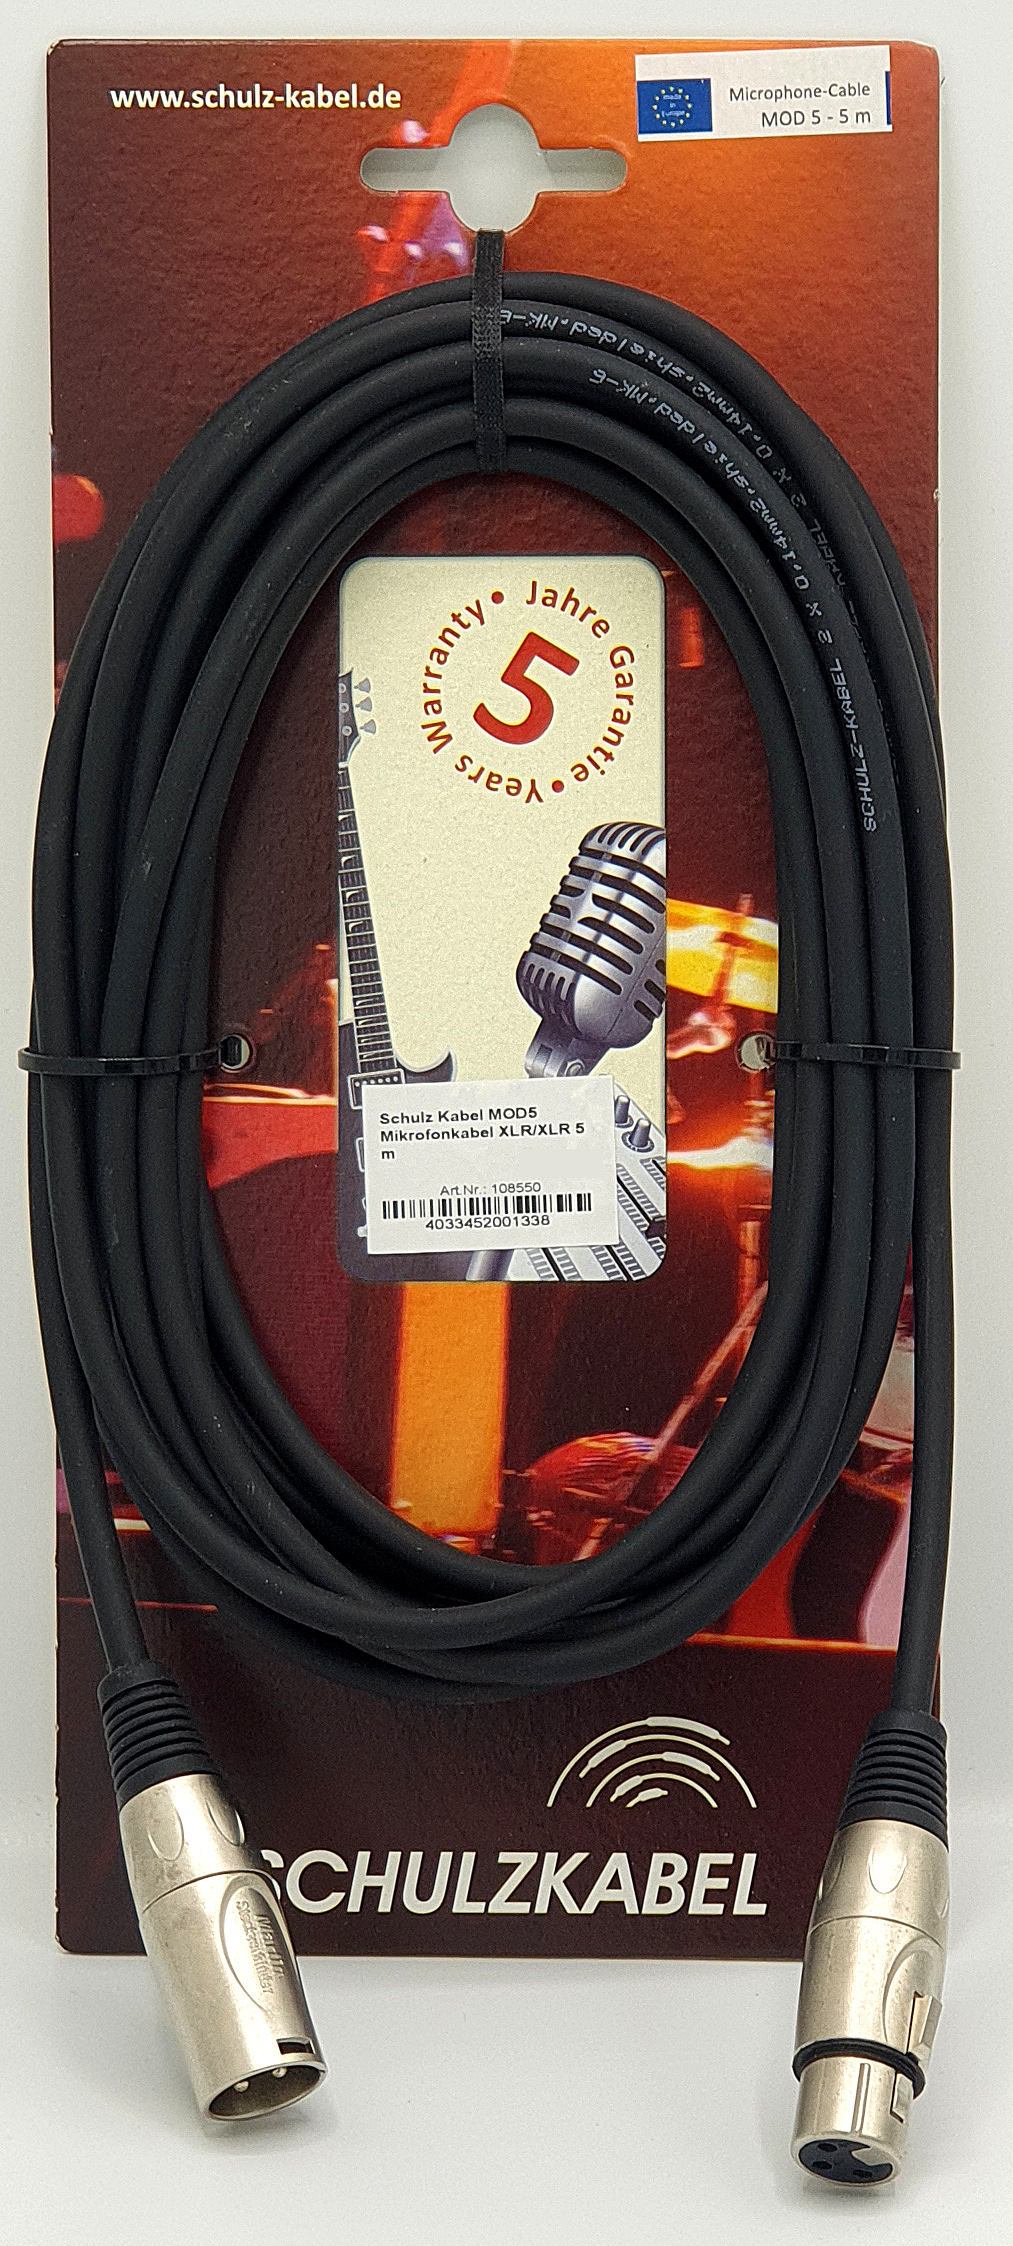 Schulz Kabel MOD Mikrofonkabel XLR / XLR - verschiedene Längen wählbar